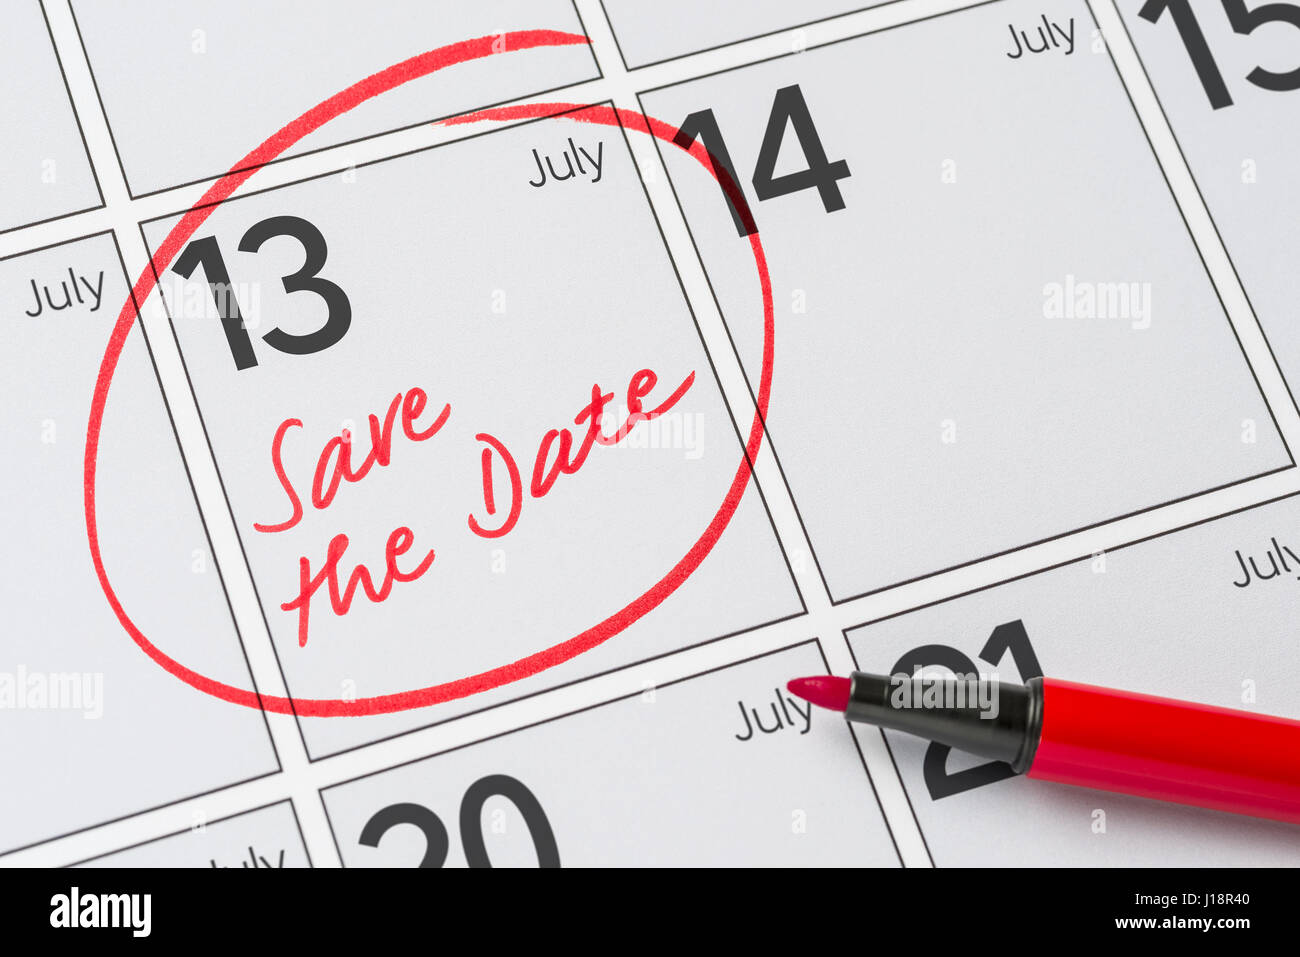 Enregistrer la date inscrite sur un calendrier - Juillet 13 Banque D'Images